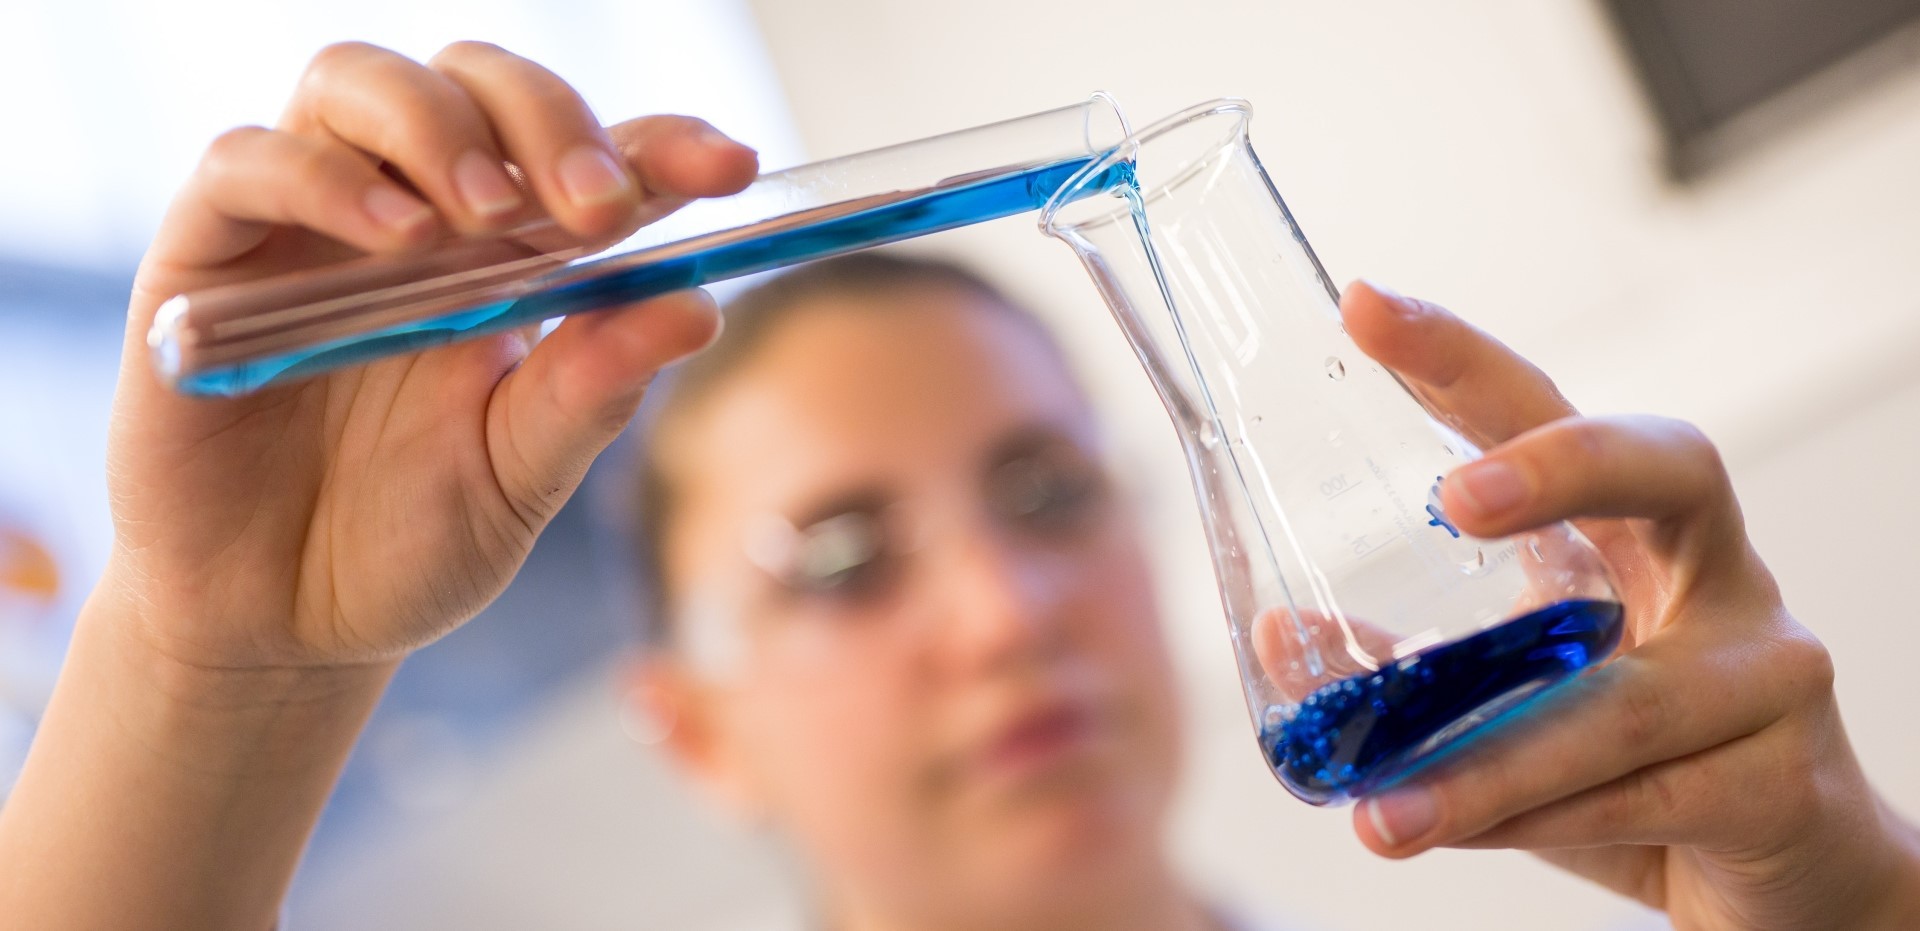 Studentin kippt eine blaue Flüssigkeit aus einem Reagenzglas in einen Glasbehälter